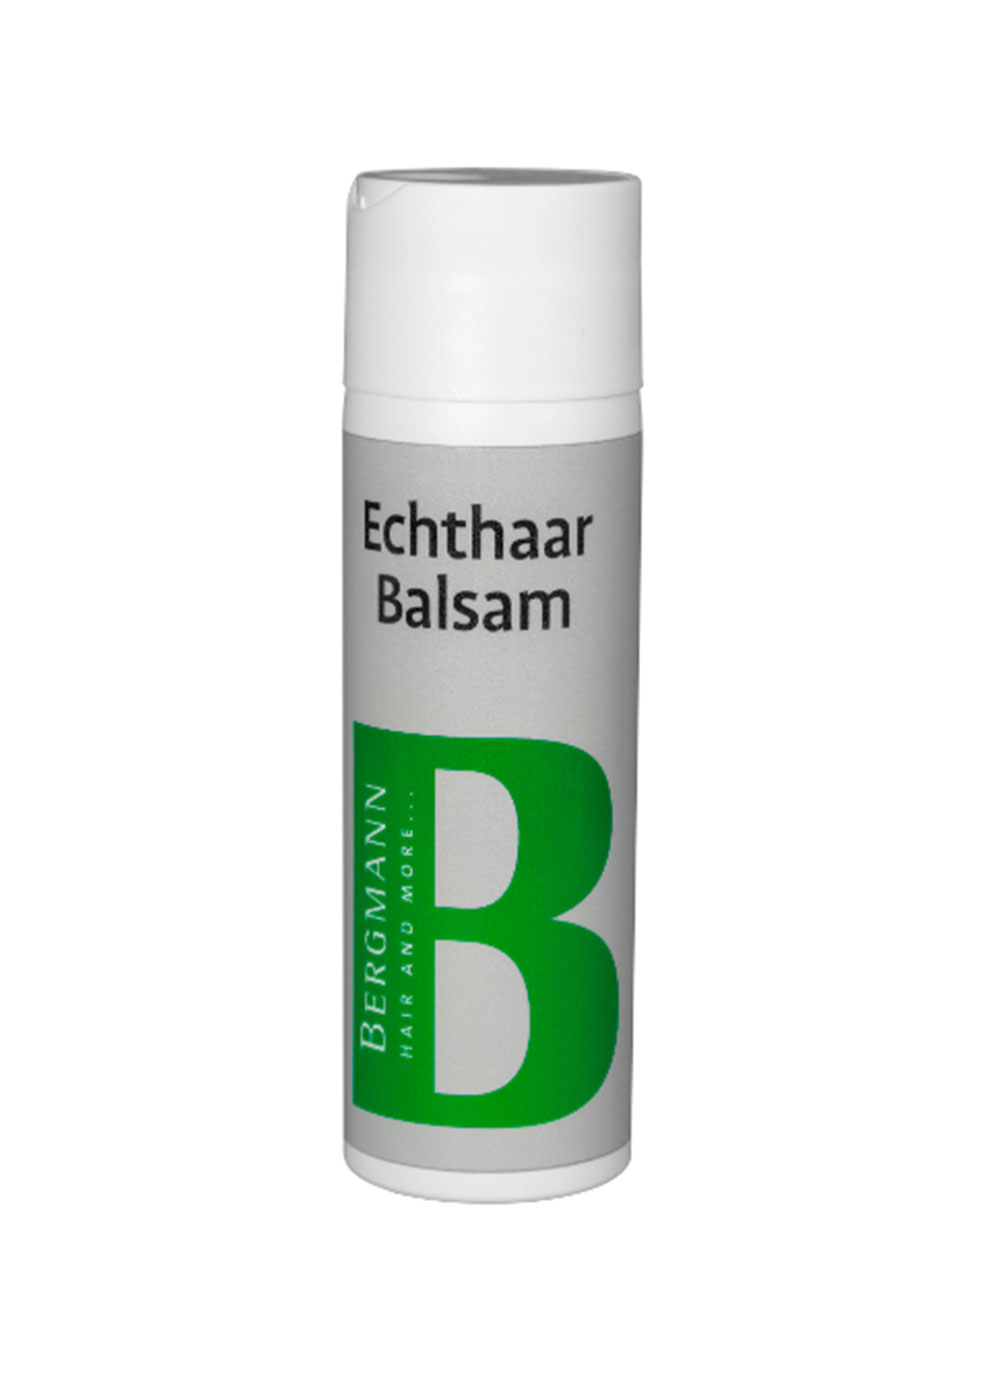 Bergmann Zubehör - Echthaar Balsam 200ml